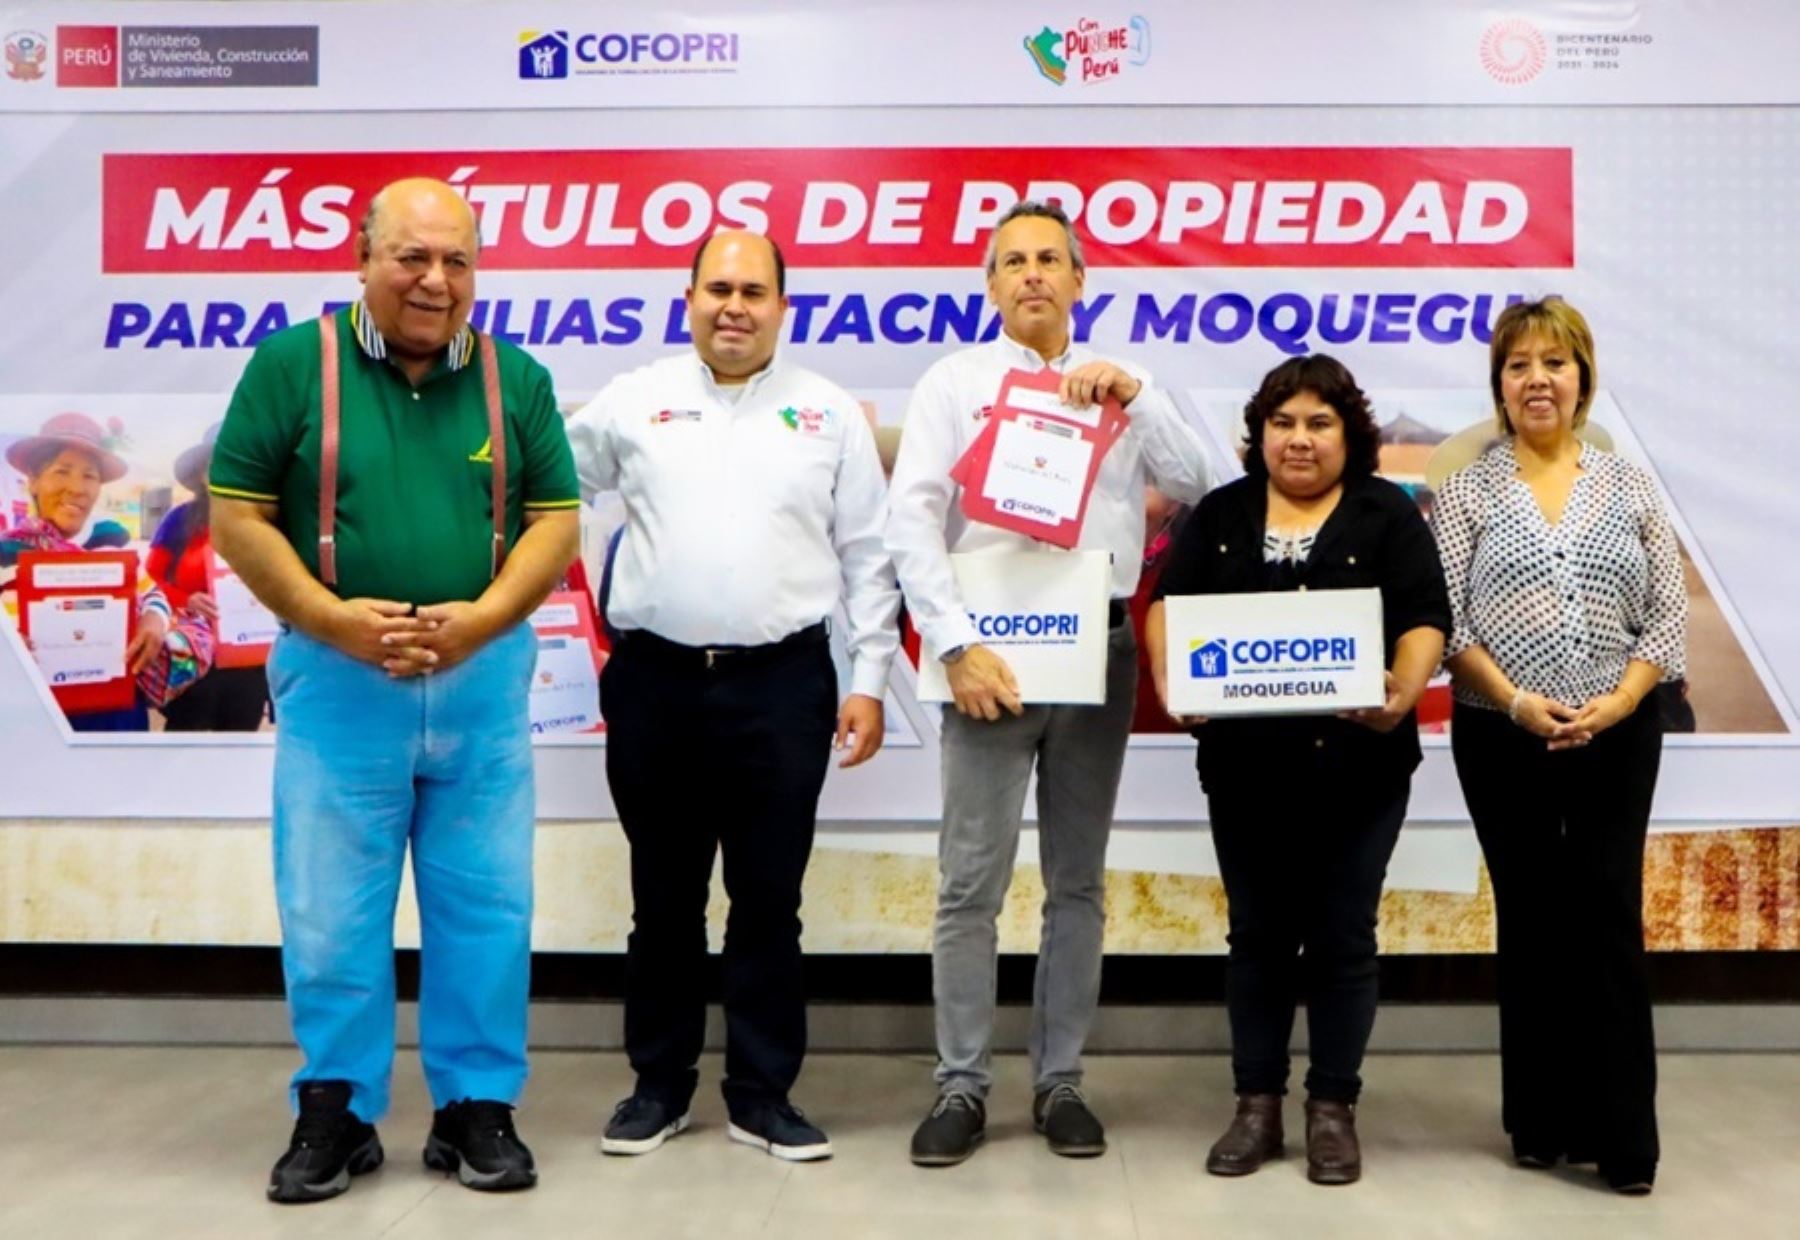 El Gobierno Regional de Tacna destinará parte de sus ingresos provenientes del canon para la construcción de viviendas de interés social, como las que ejecuta el programa Techo Propio, a fin de atender las necesidades de miles de familias vulnerables en esa zona de frontera.